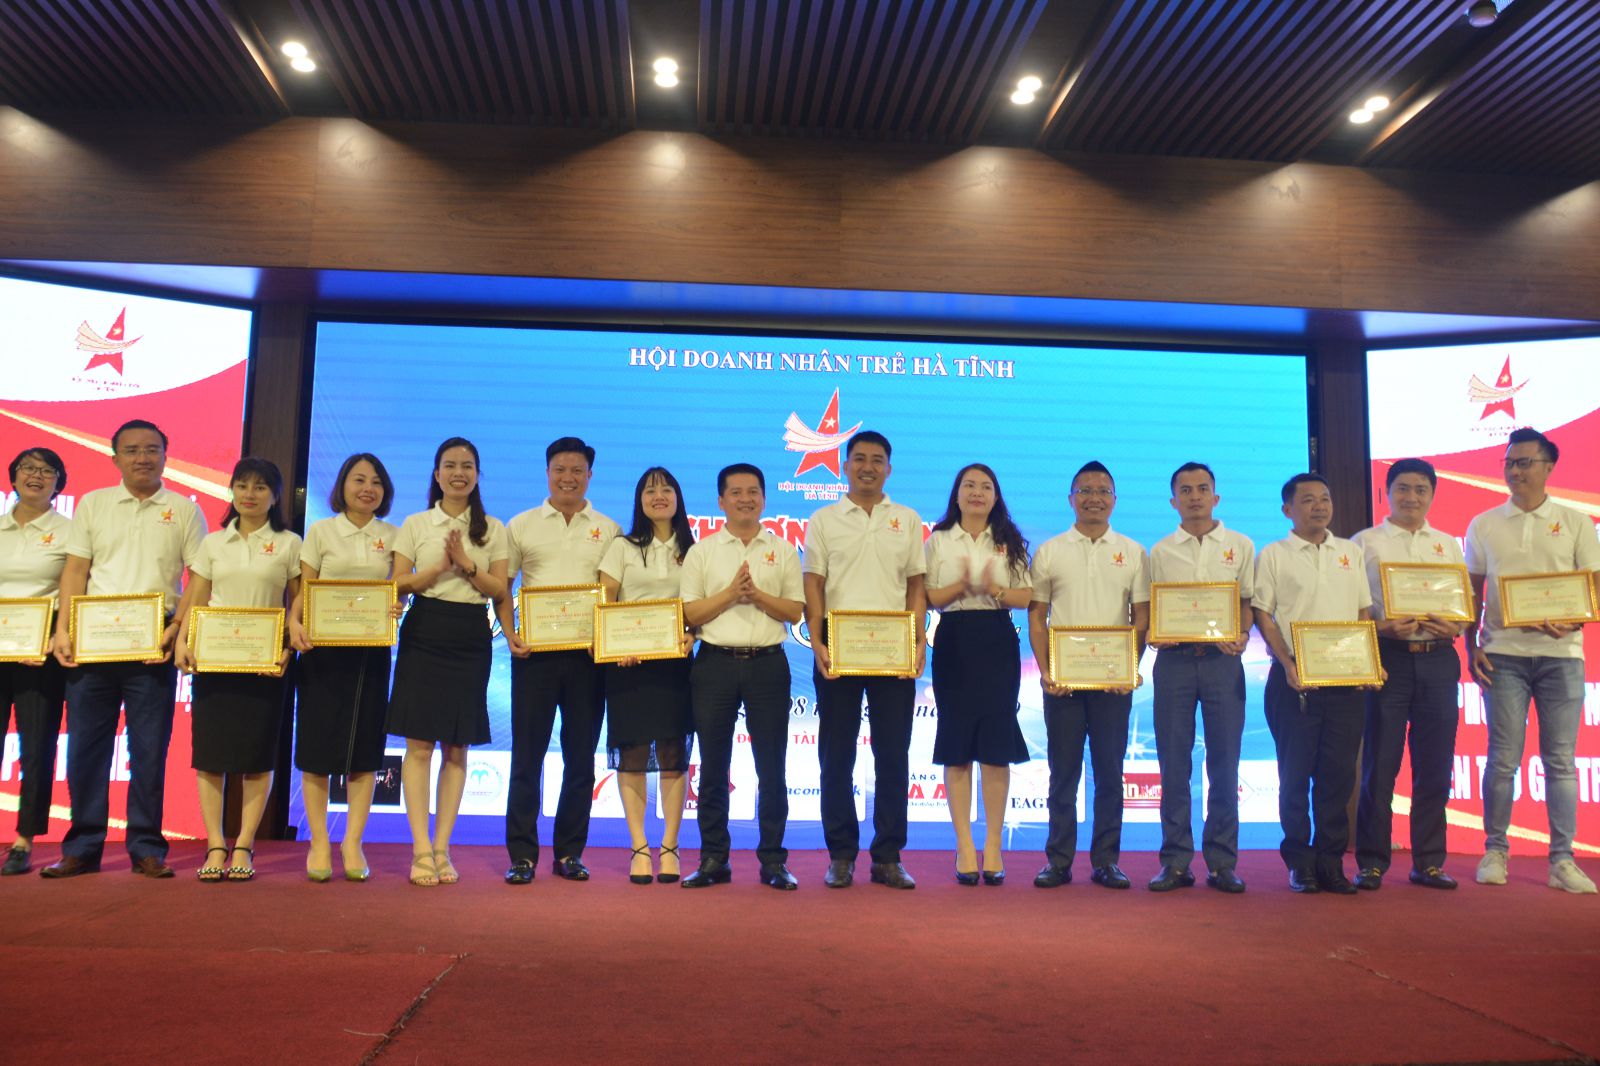 Hội Doanh nhân Trẻ Hà Tĩnh trao chứng nhận cho 15 hội viên mới